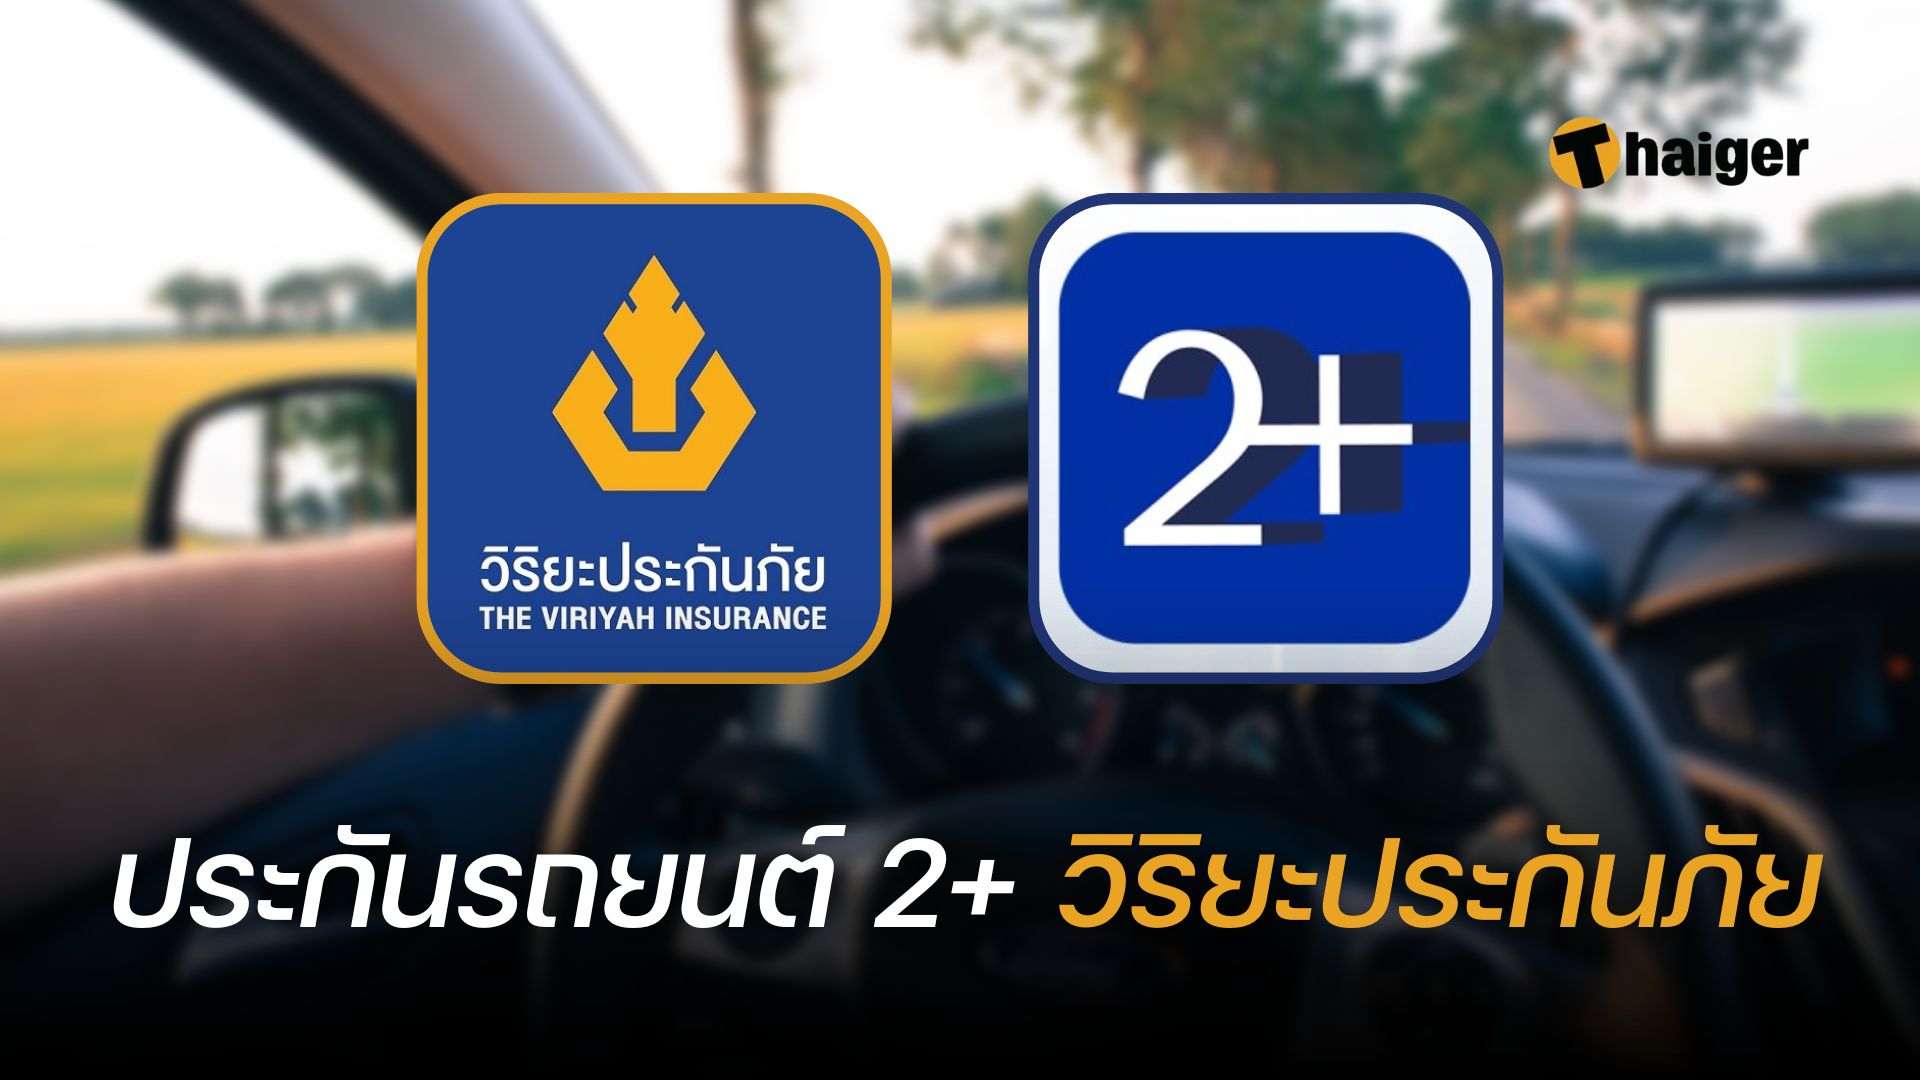 ประกันรถยนต์ 2+ วิริยะประกันภัย ซื้อออนไลน์ได้ เบี้ยเริ่มต้น 7500 บาท |  Thaiger ข่าวไทย